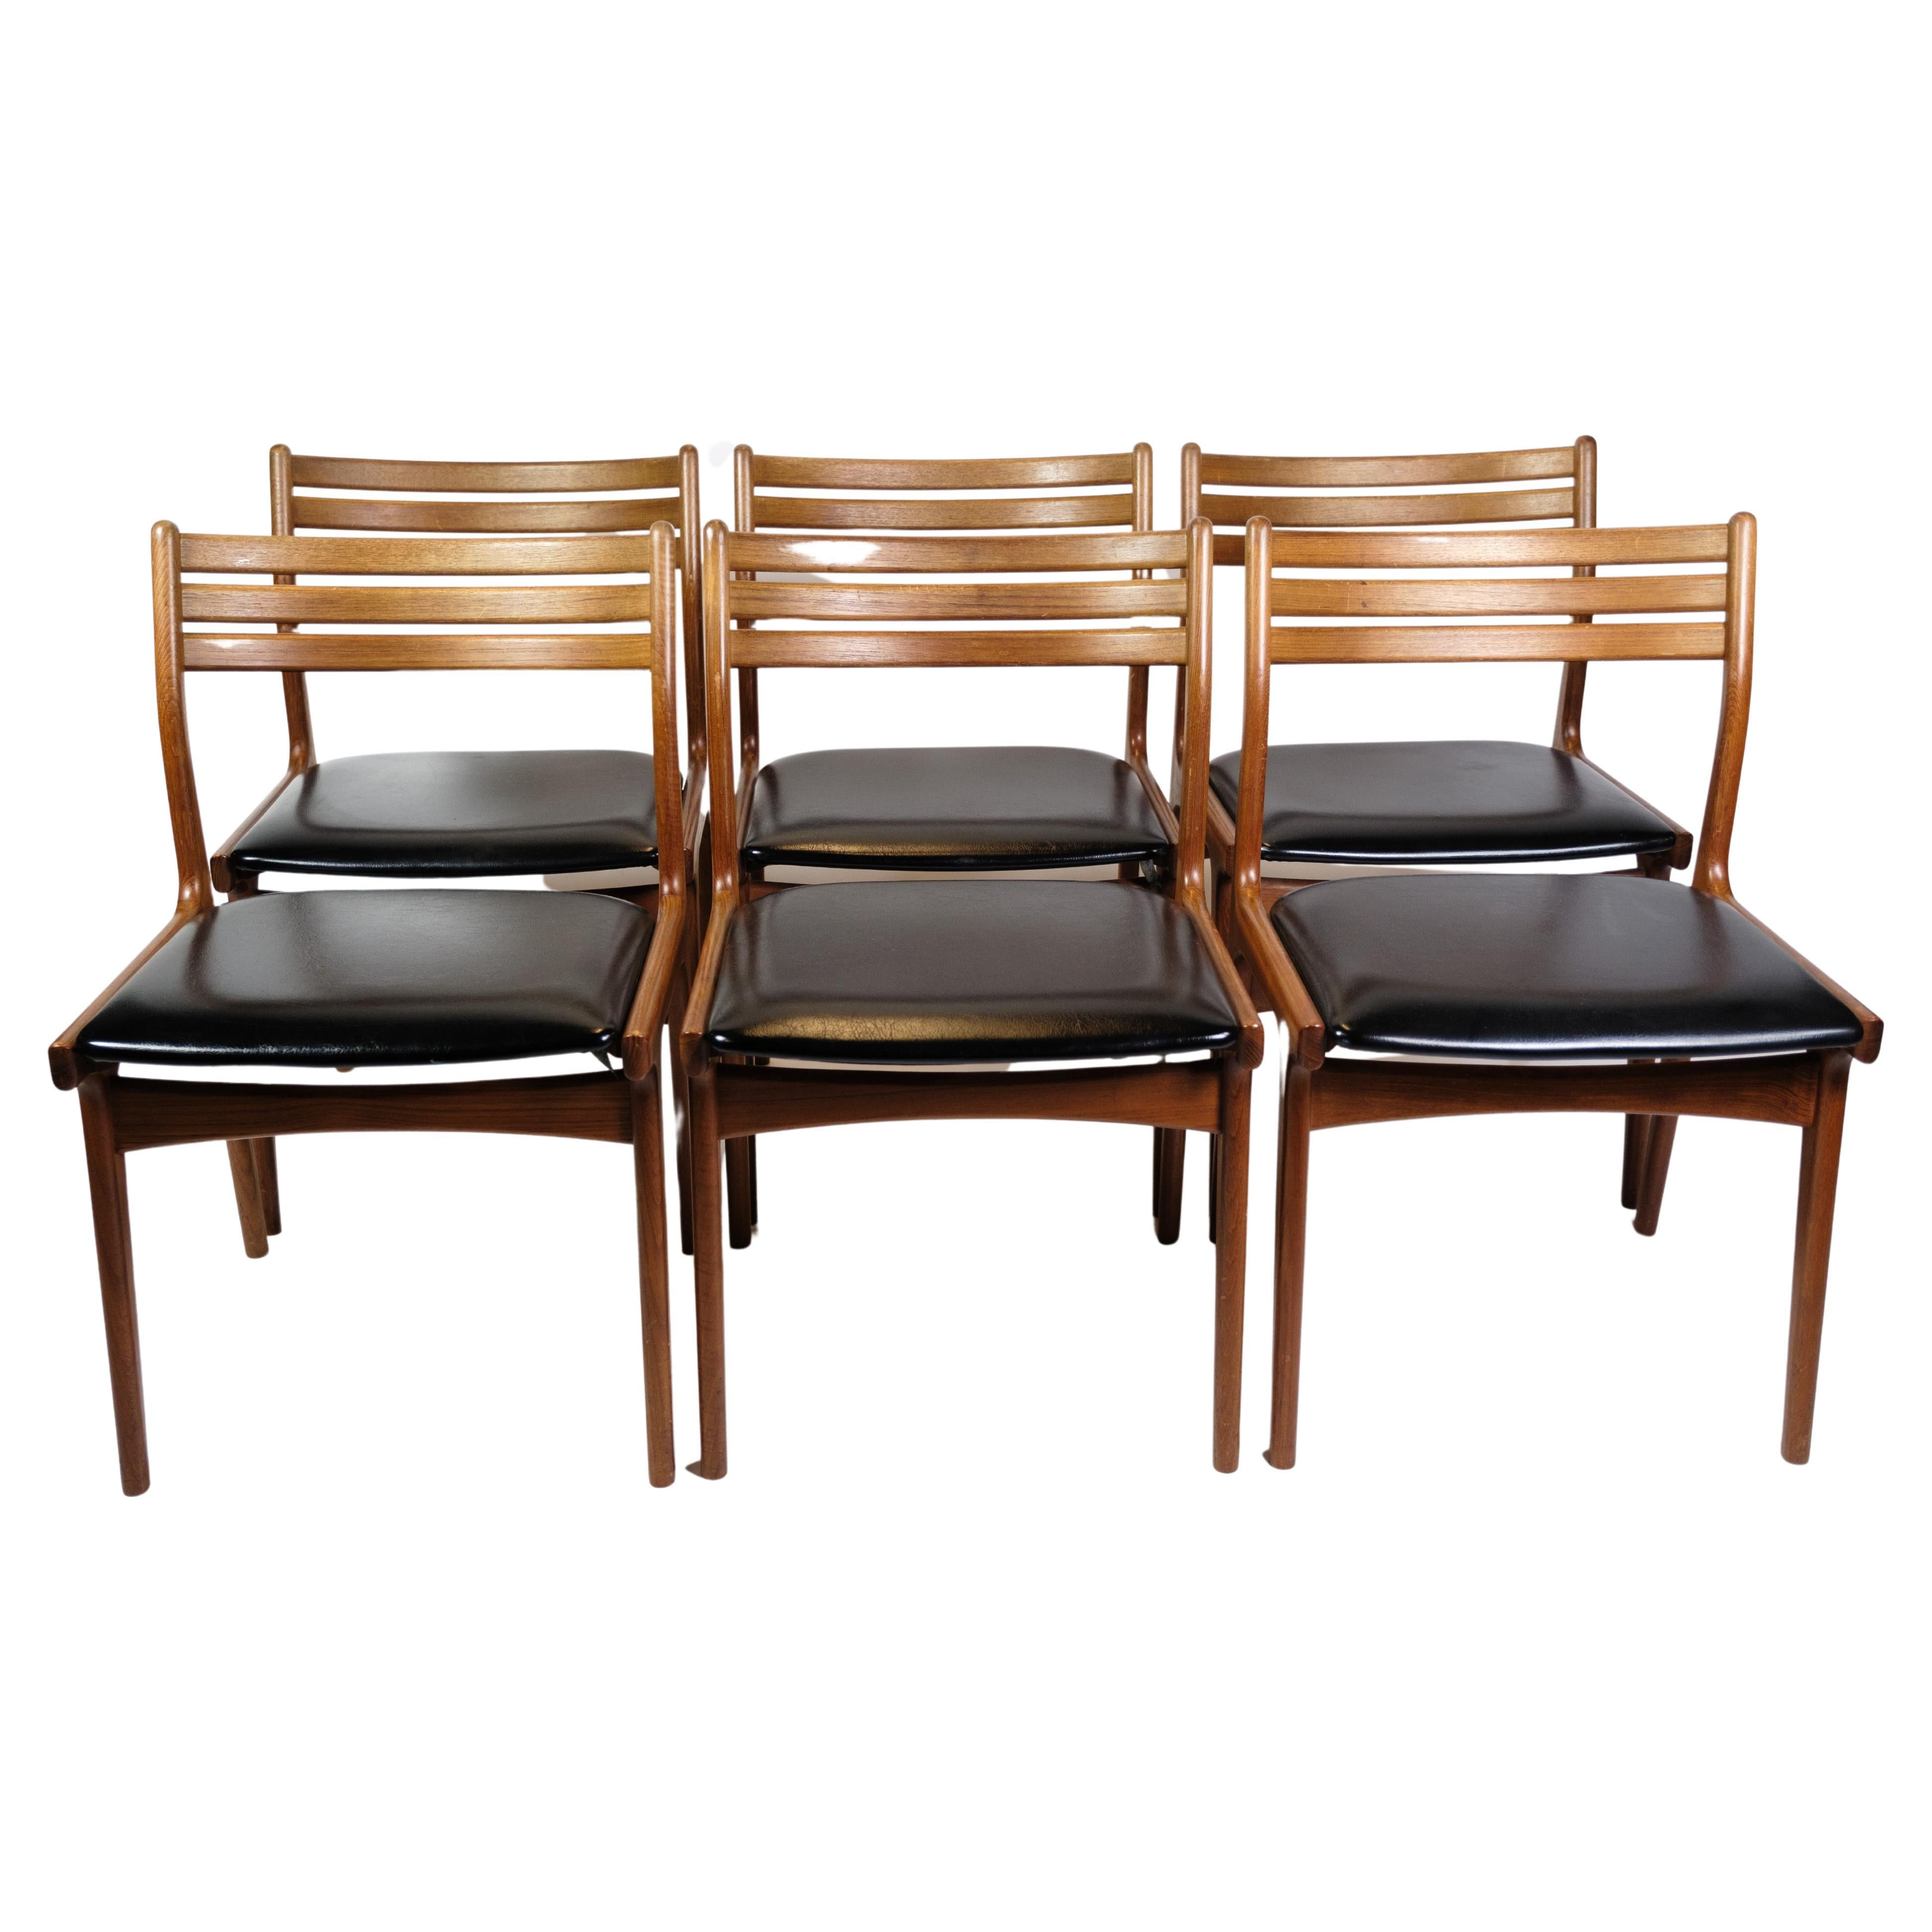 Ensemble de 6 chaises de salle à manger modèle U20 fabriquées en teck par Johannes Andersen, années 1960